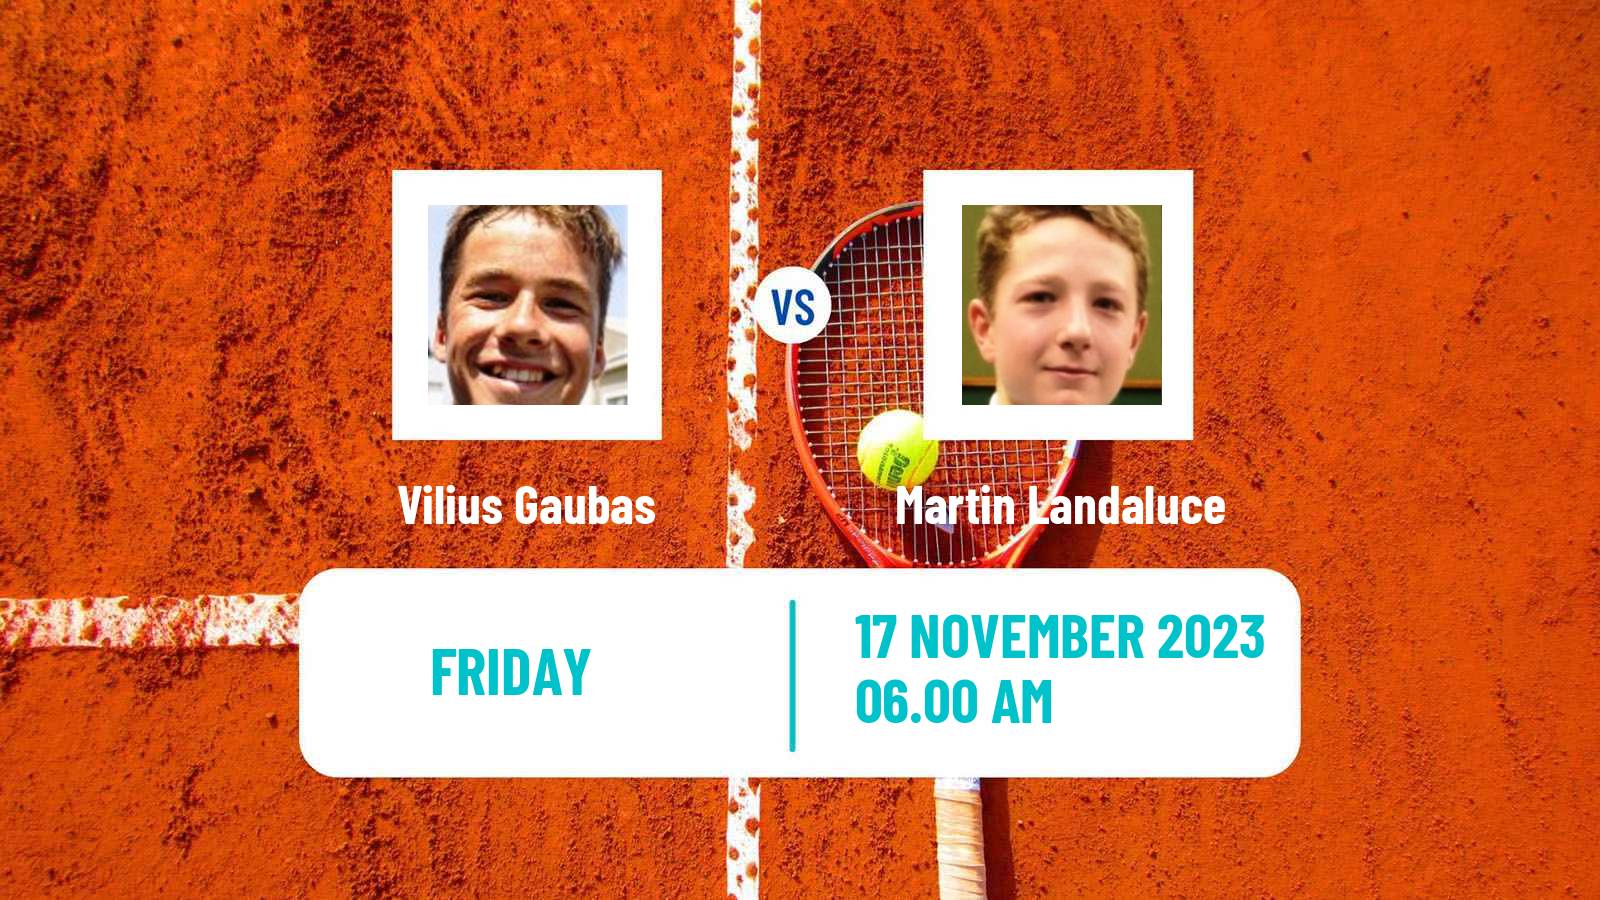 Tennis ITF M15 Valencia Men Vilius Gaubas - Martin Landaluce